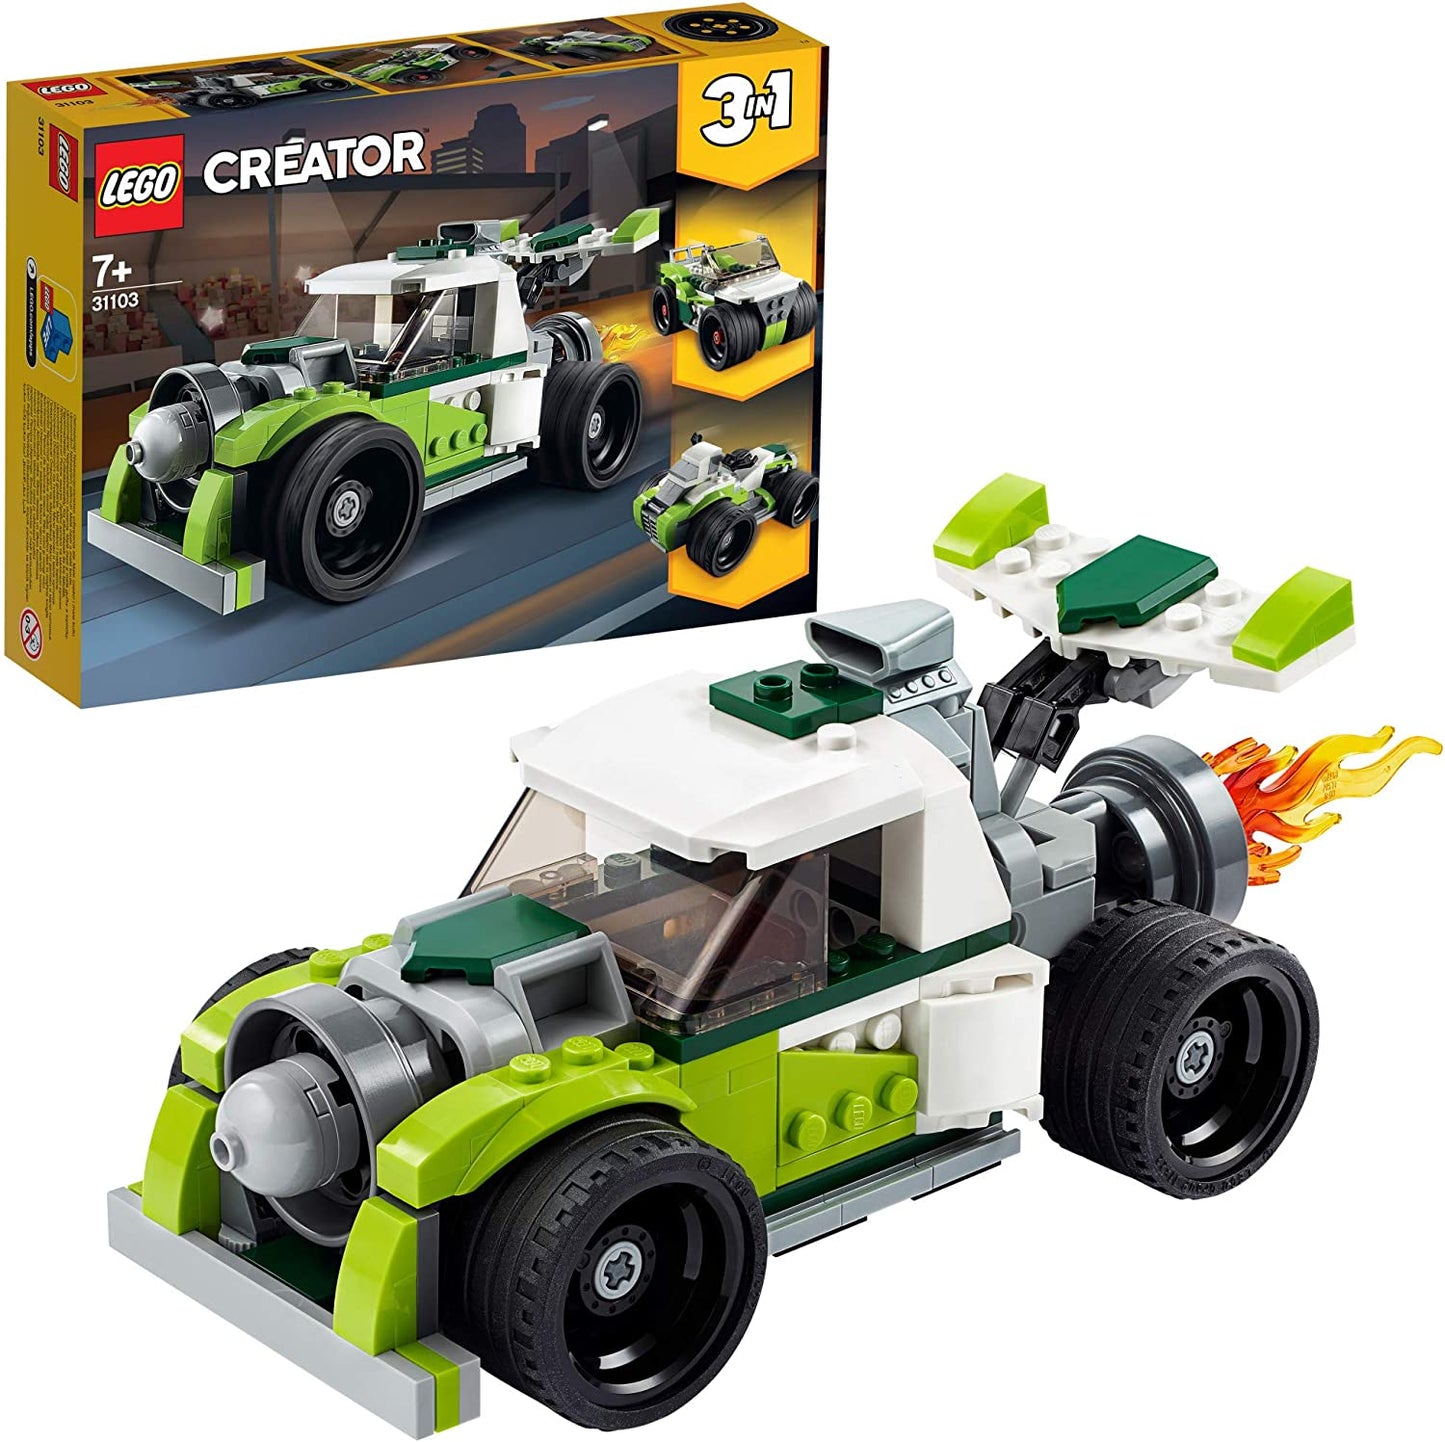 LEGO Creator - 3in1 Rocket Truck 31103